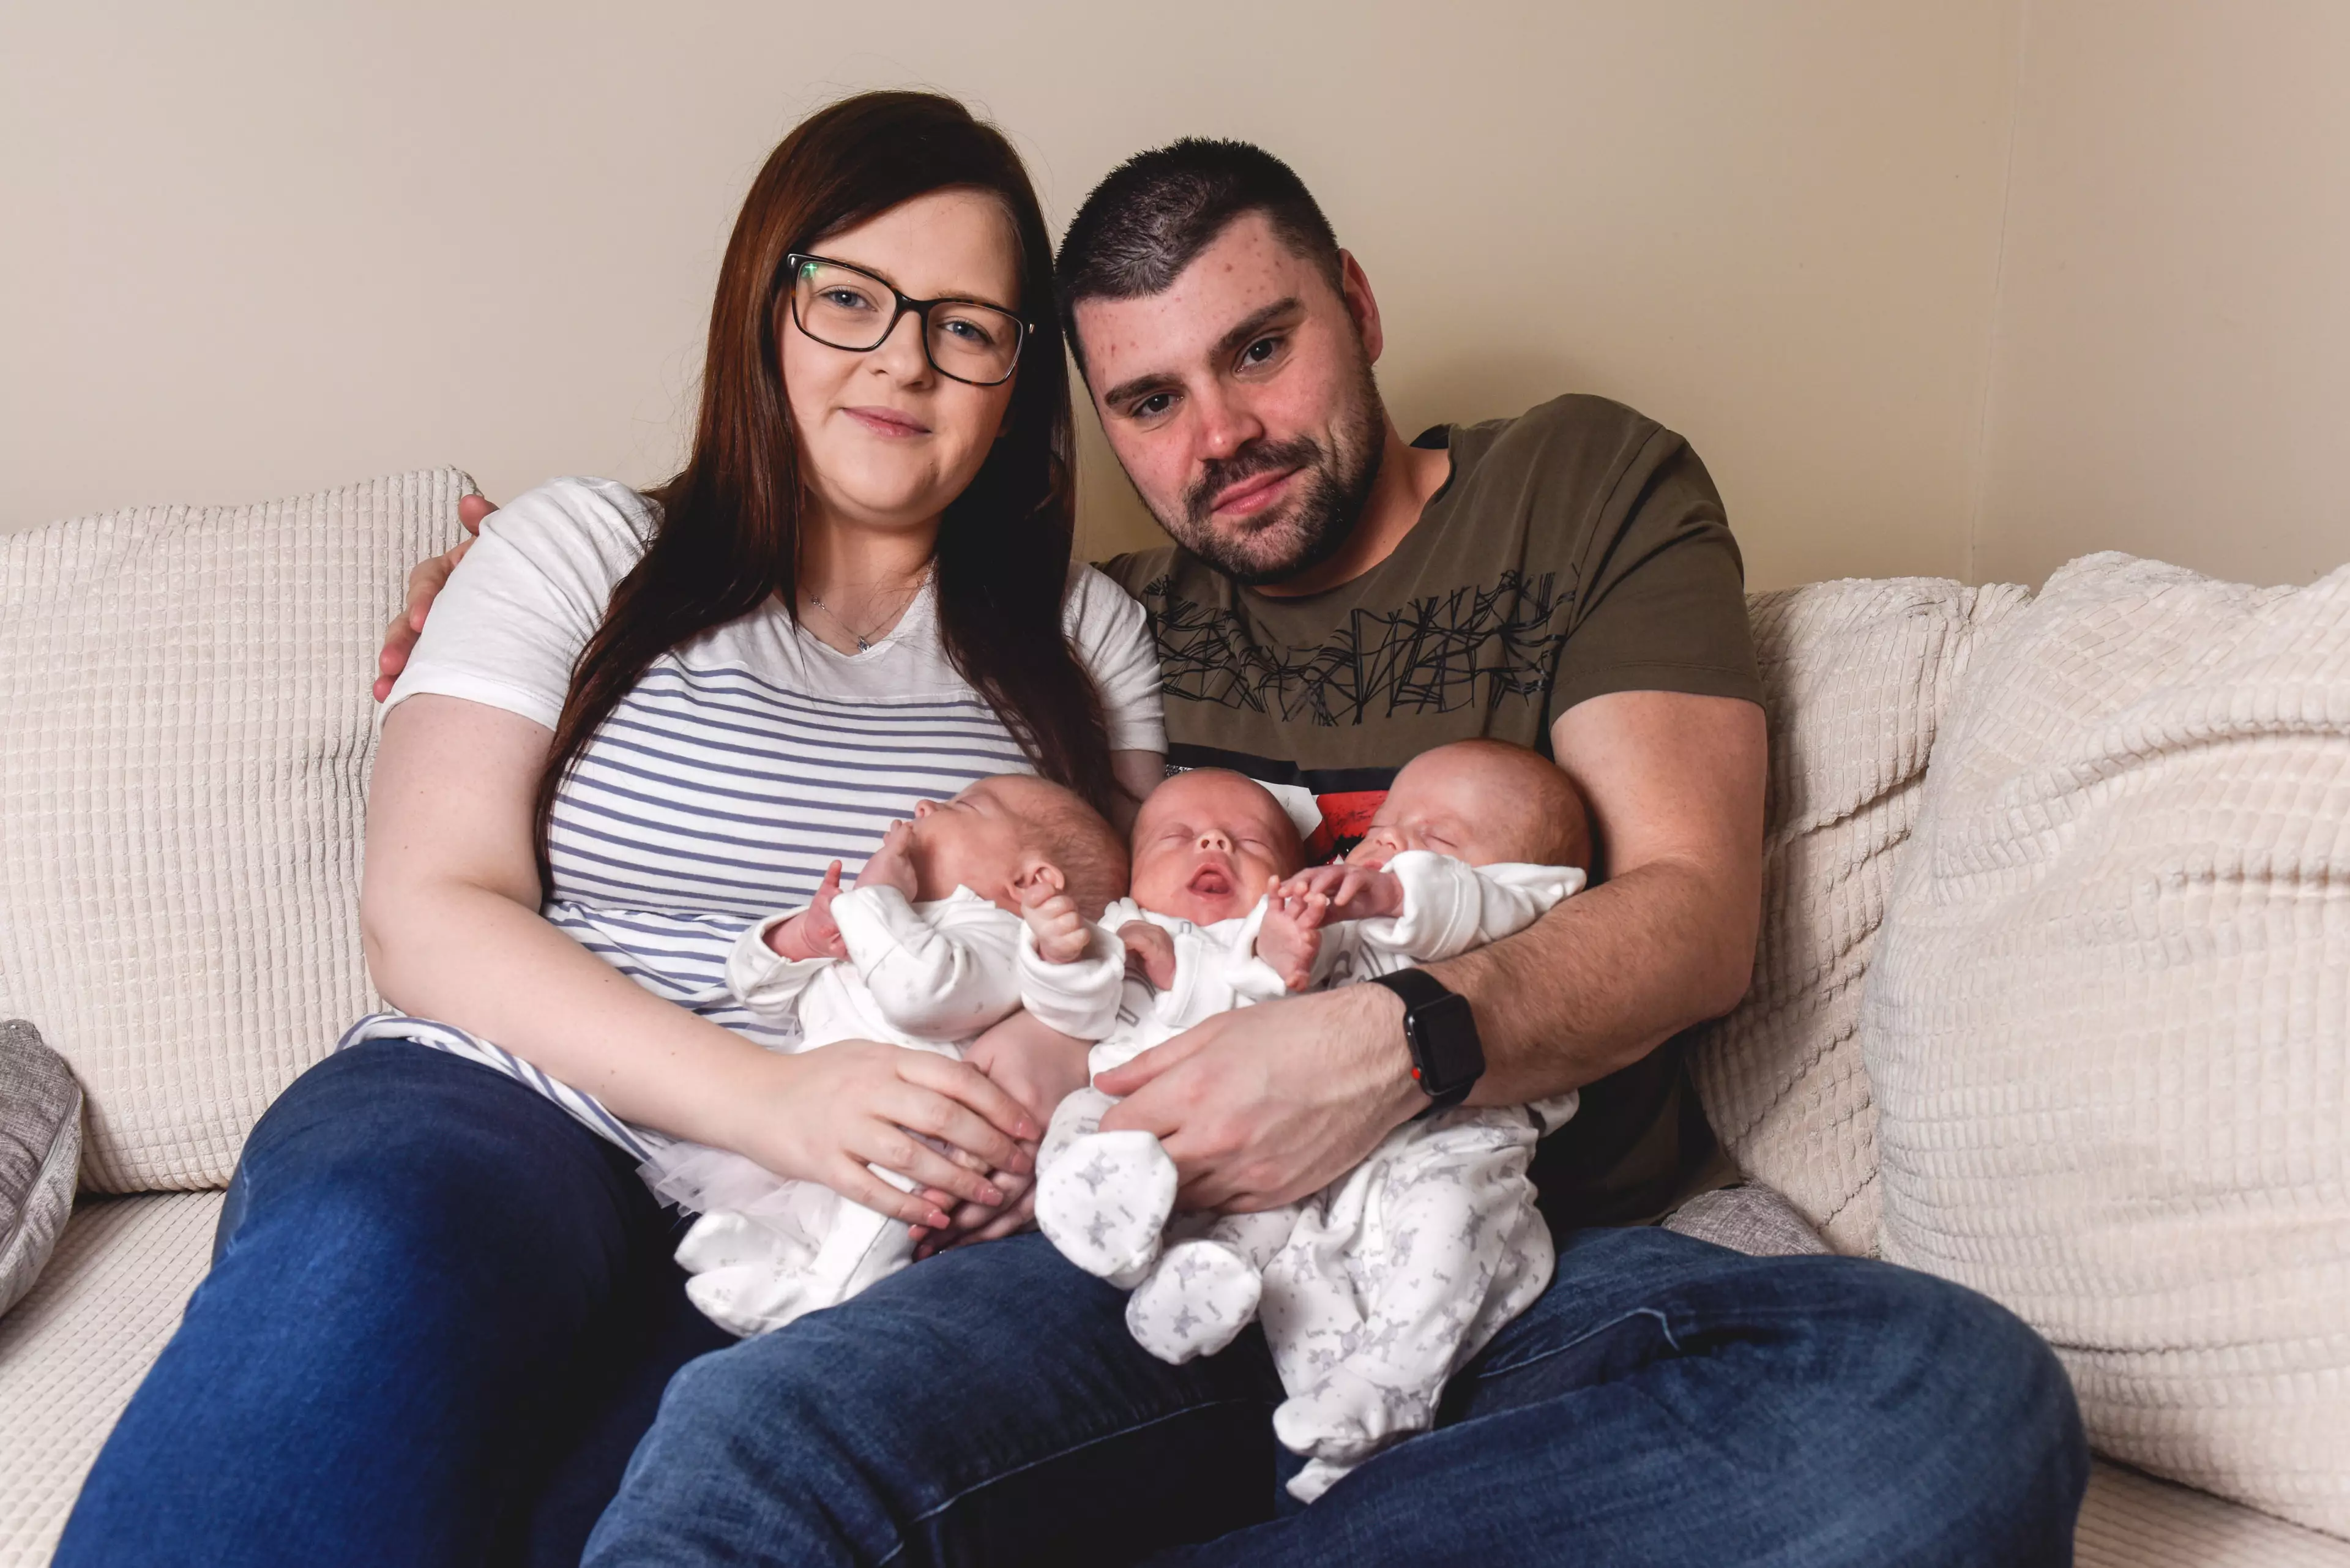 Nicola Stead, 30, had no idea she was pregnant.